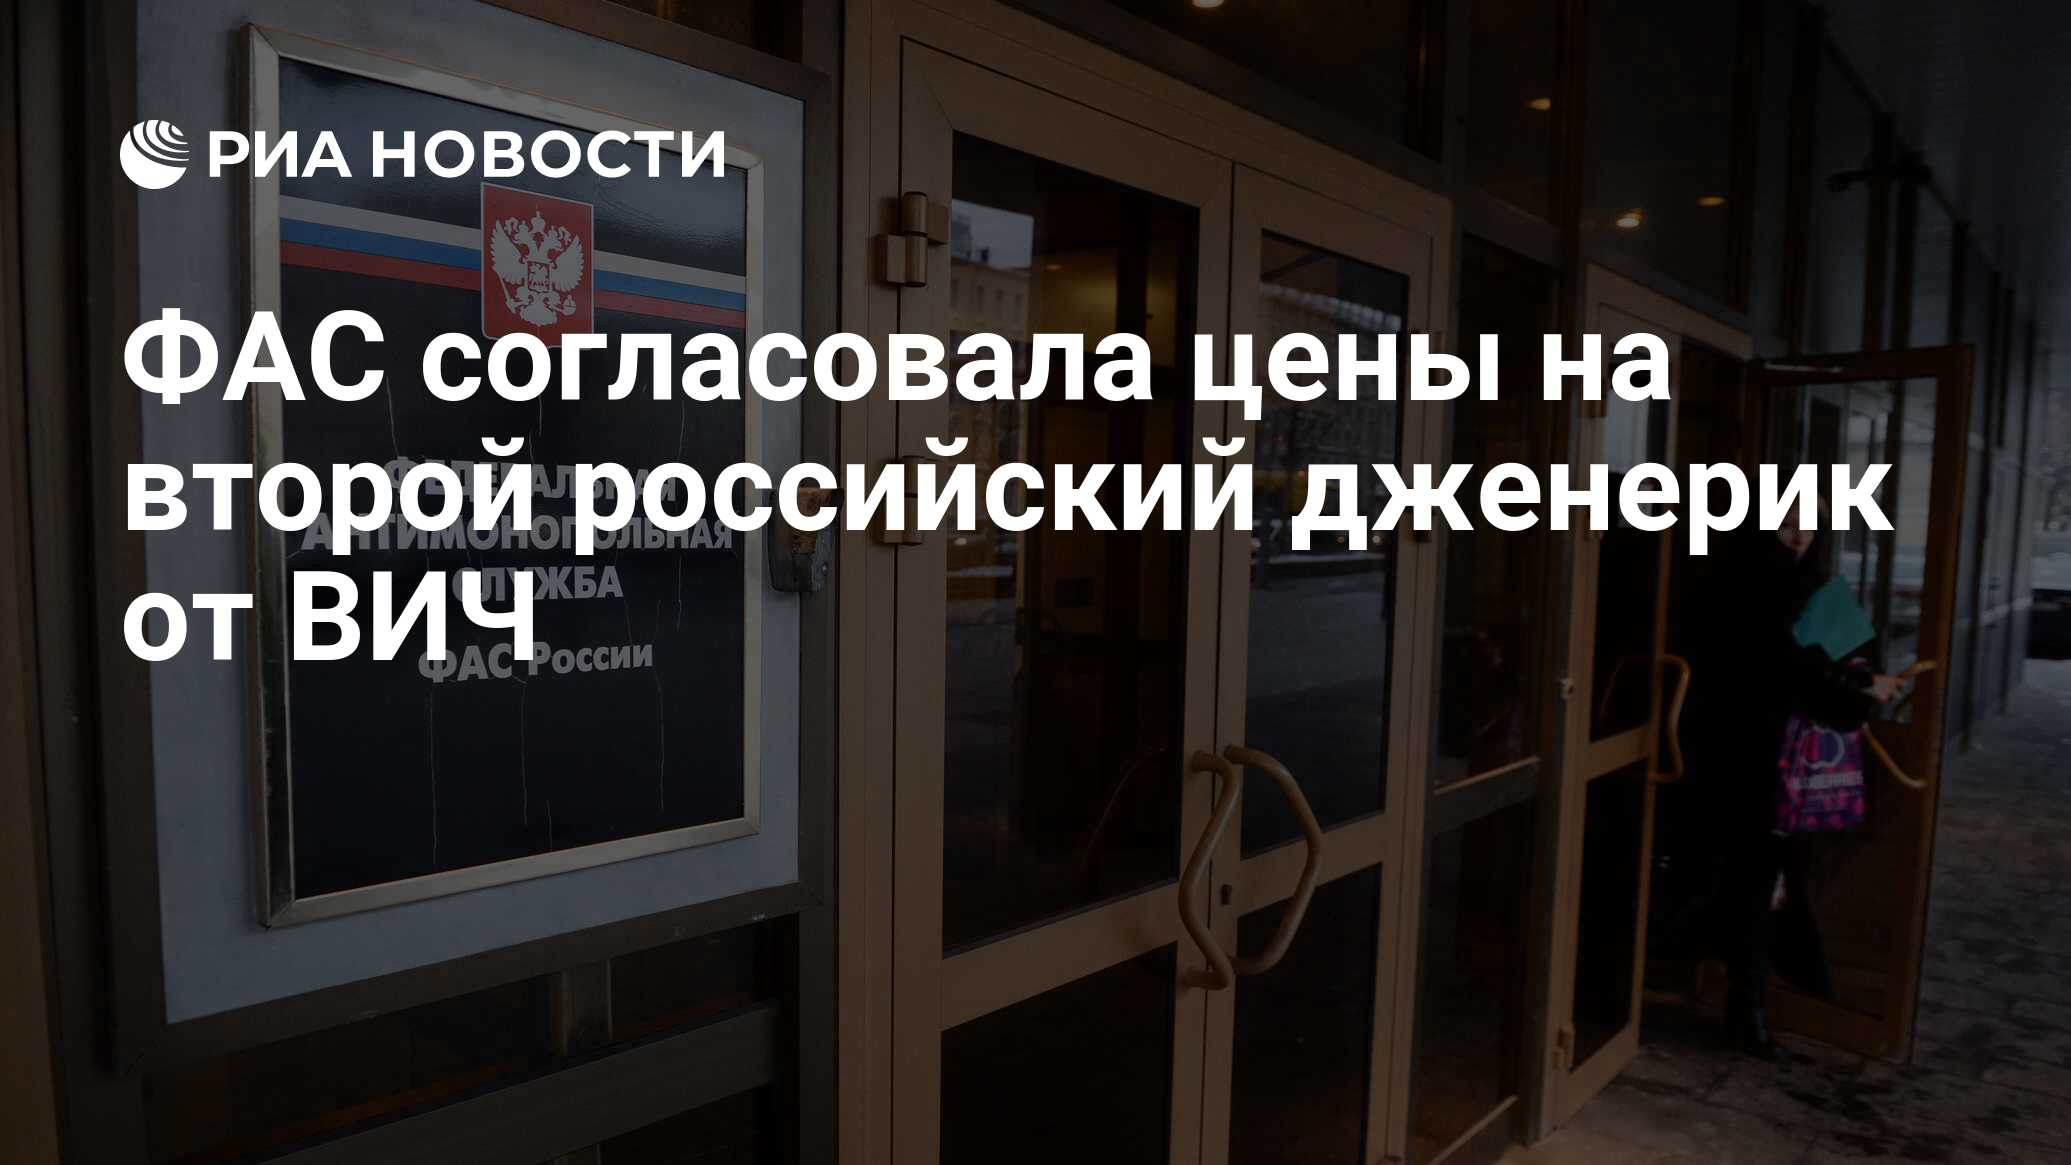 ФАС согласовала цены на второй российский дженерик от ВИЧ - РИА Новости .